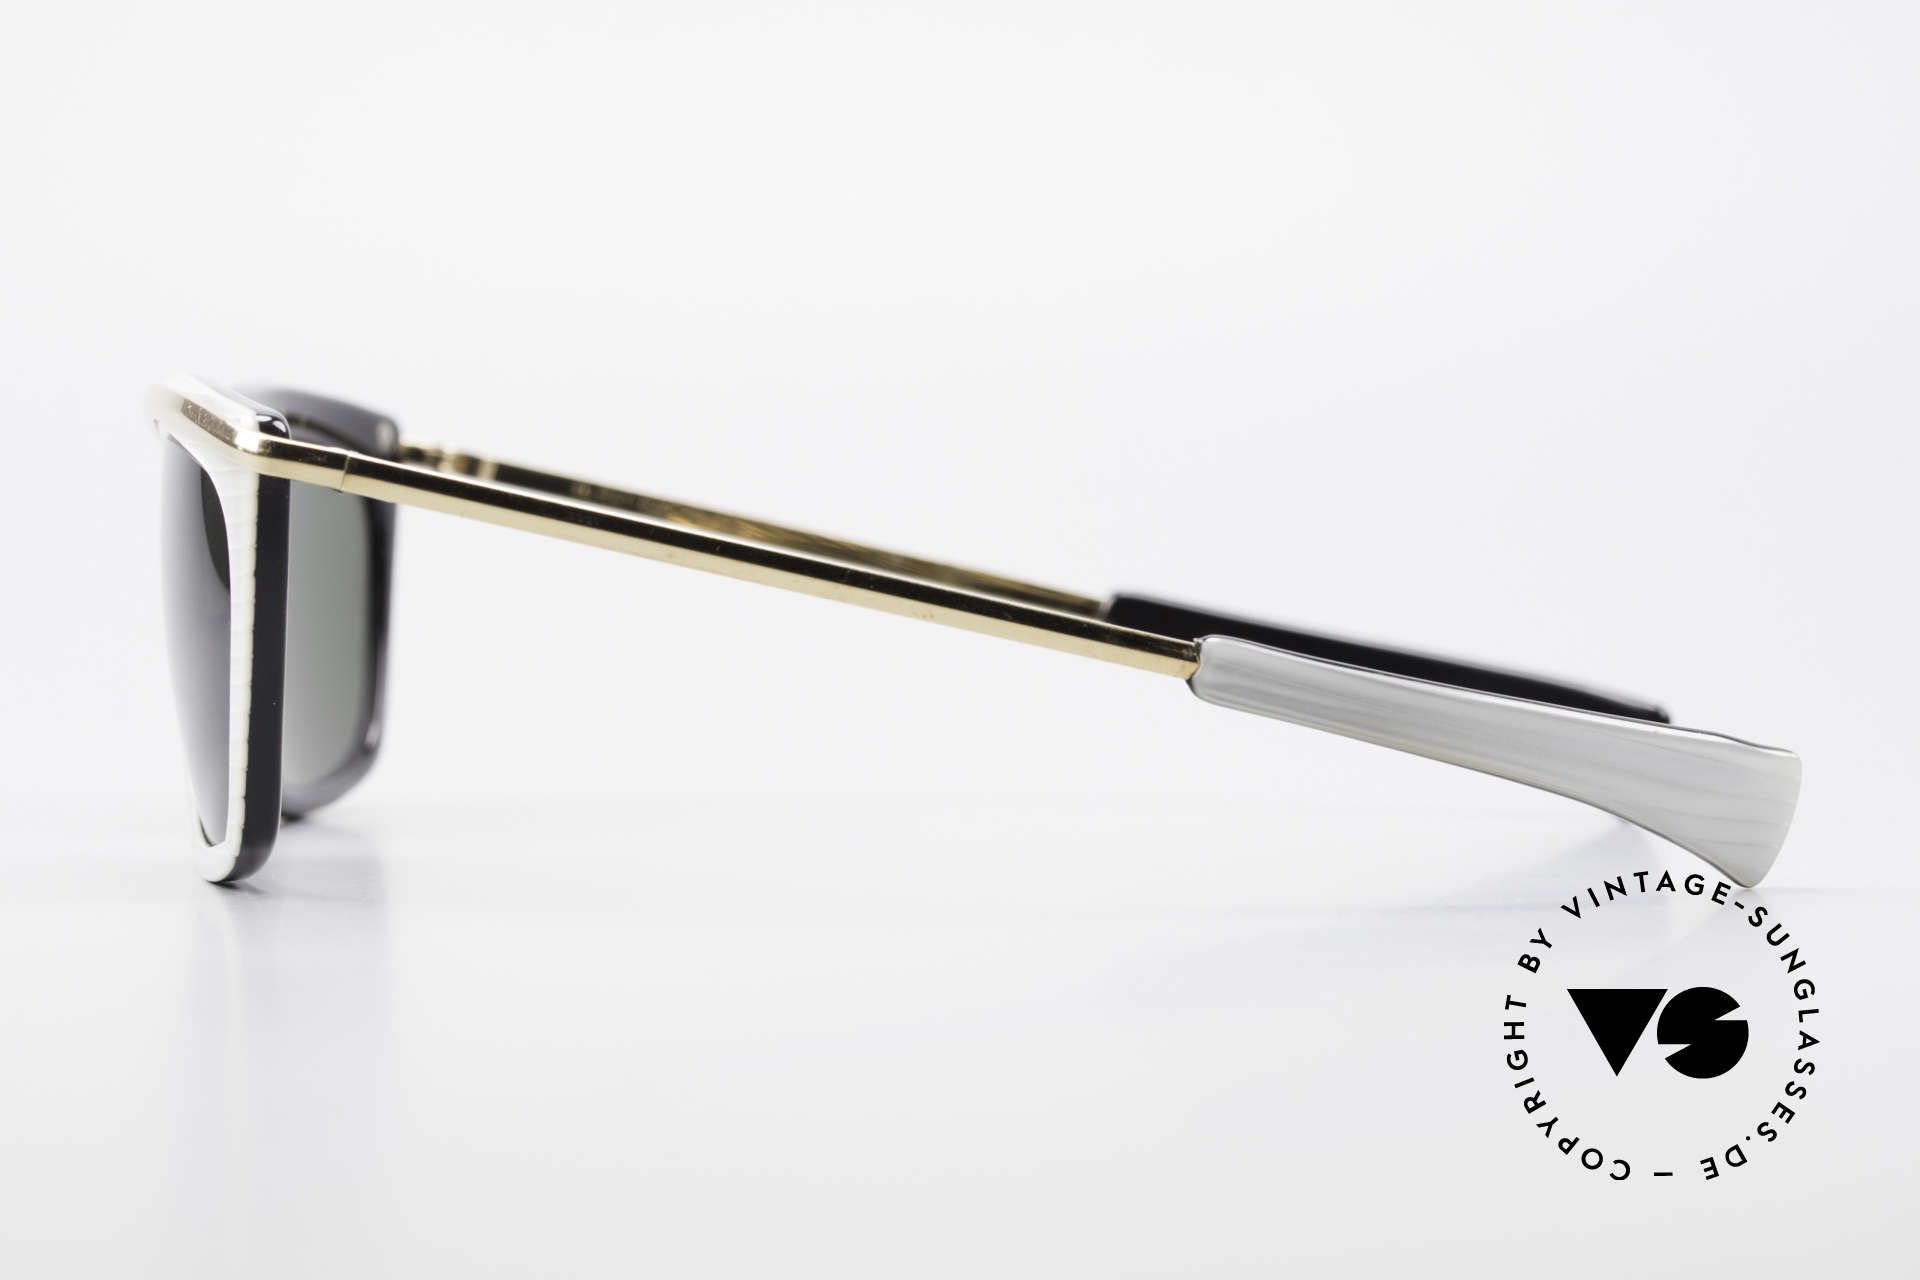 Ray Ban Olympian II B&L Ray-Ban Sonnenbrille USA, KEINE RETROsonnenbrille, 100% vintage Original, Passend für Herren und Damen